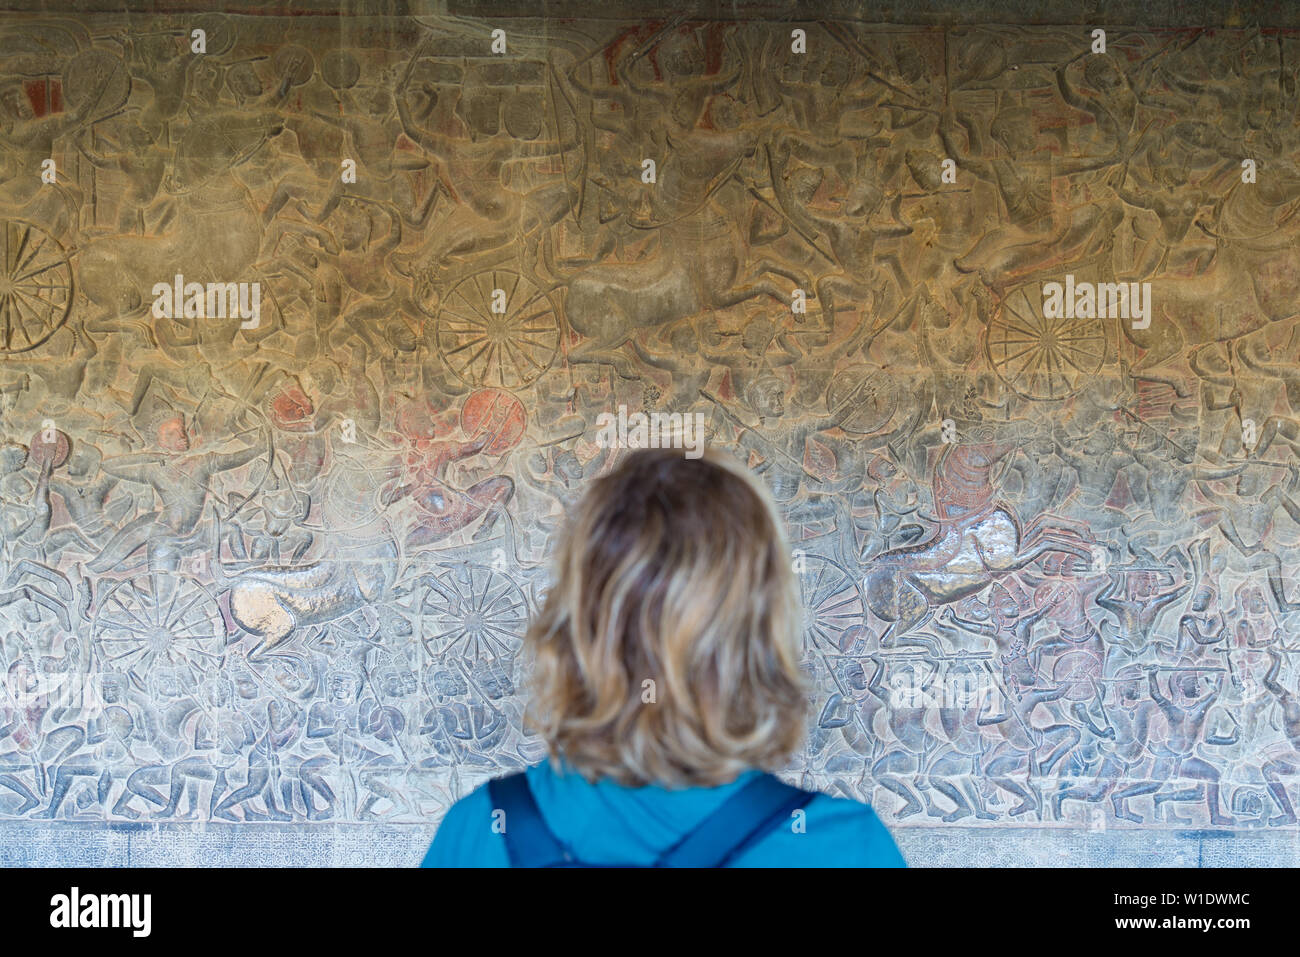 Berühmte bas Reflief in der Wand von Angkor Wat Tempel geschnitzt, Weltkulturerbe und die meisten touristische Website besucht, Kambodscha. Touristische, unscharf, Stockfoto